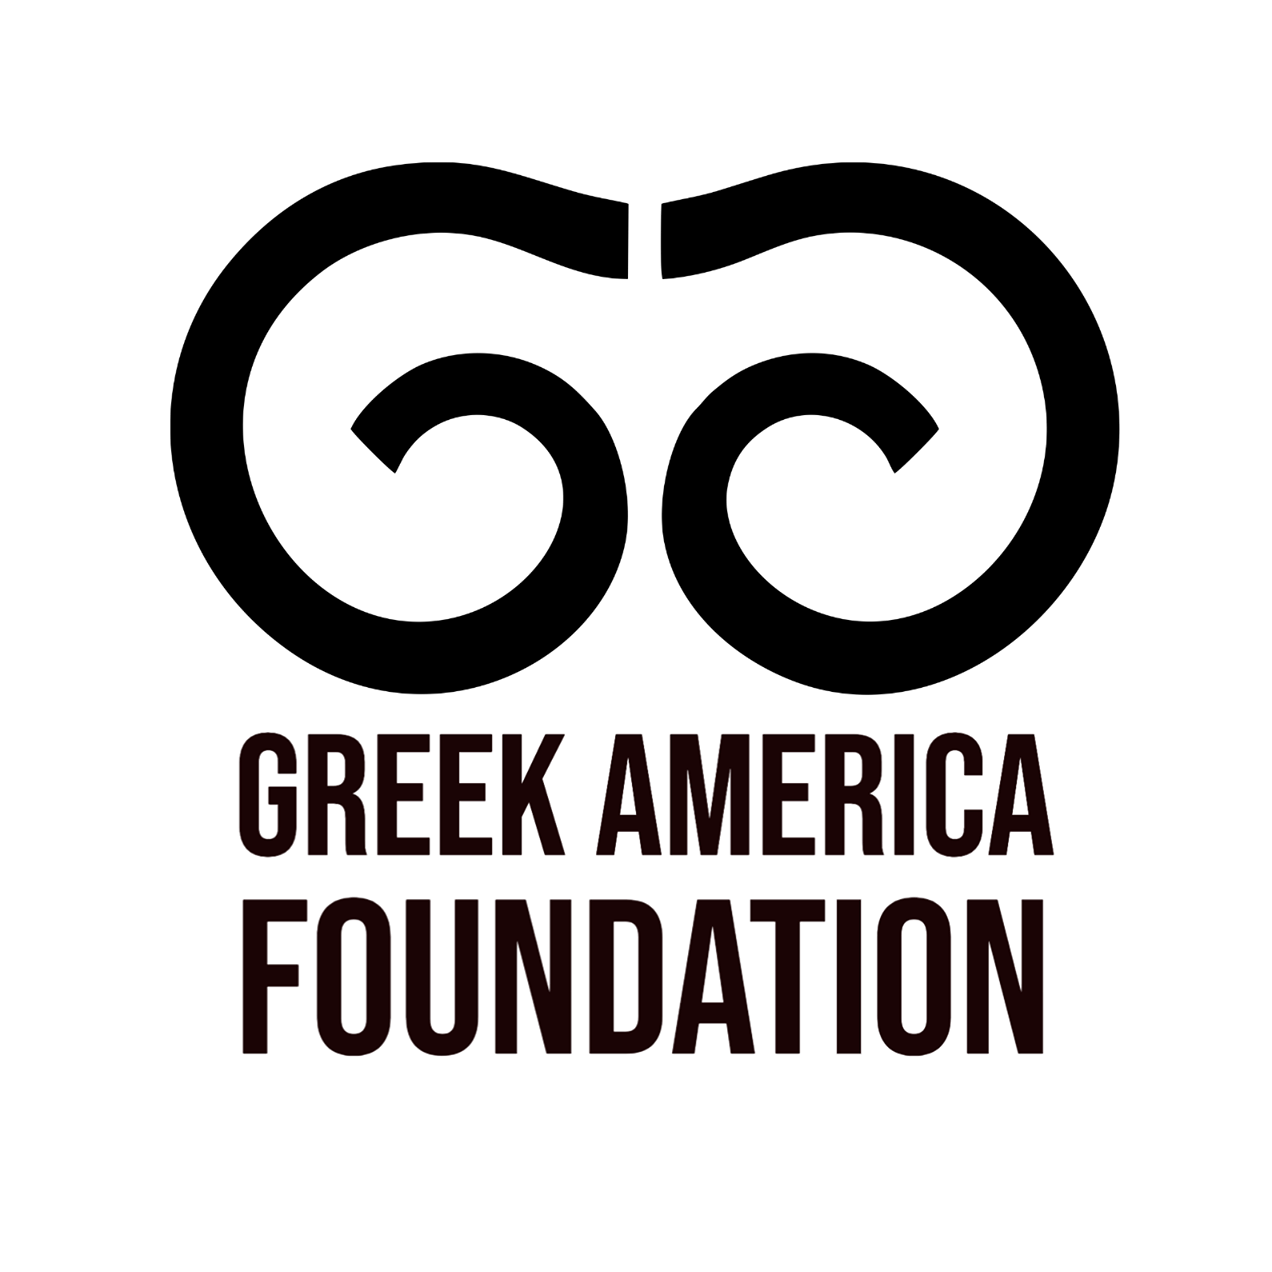 Greek Organizations Near Me - Greek America Foundation